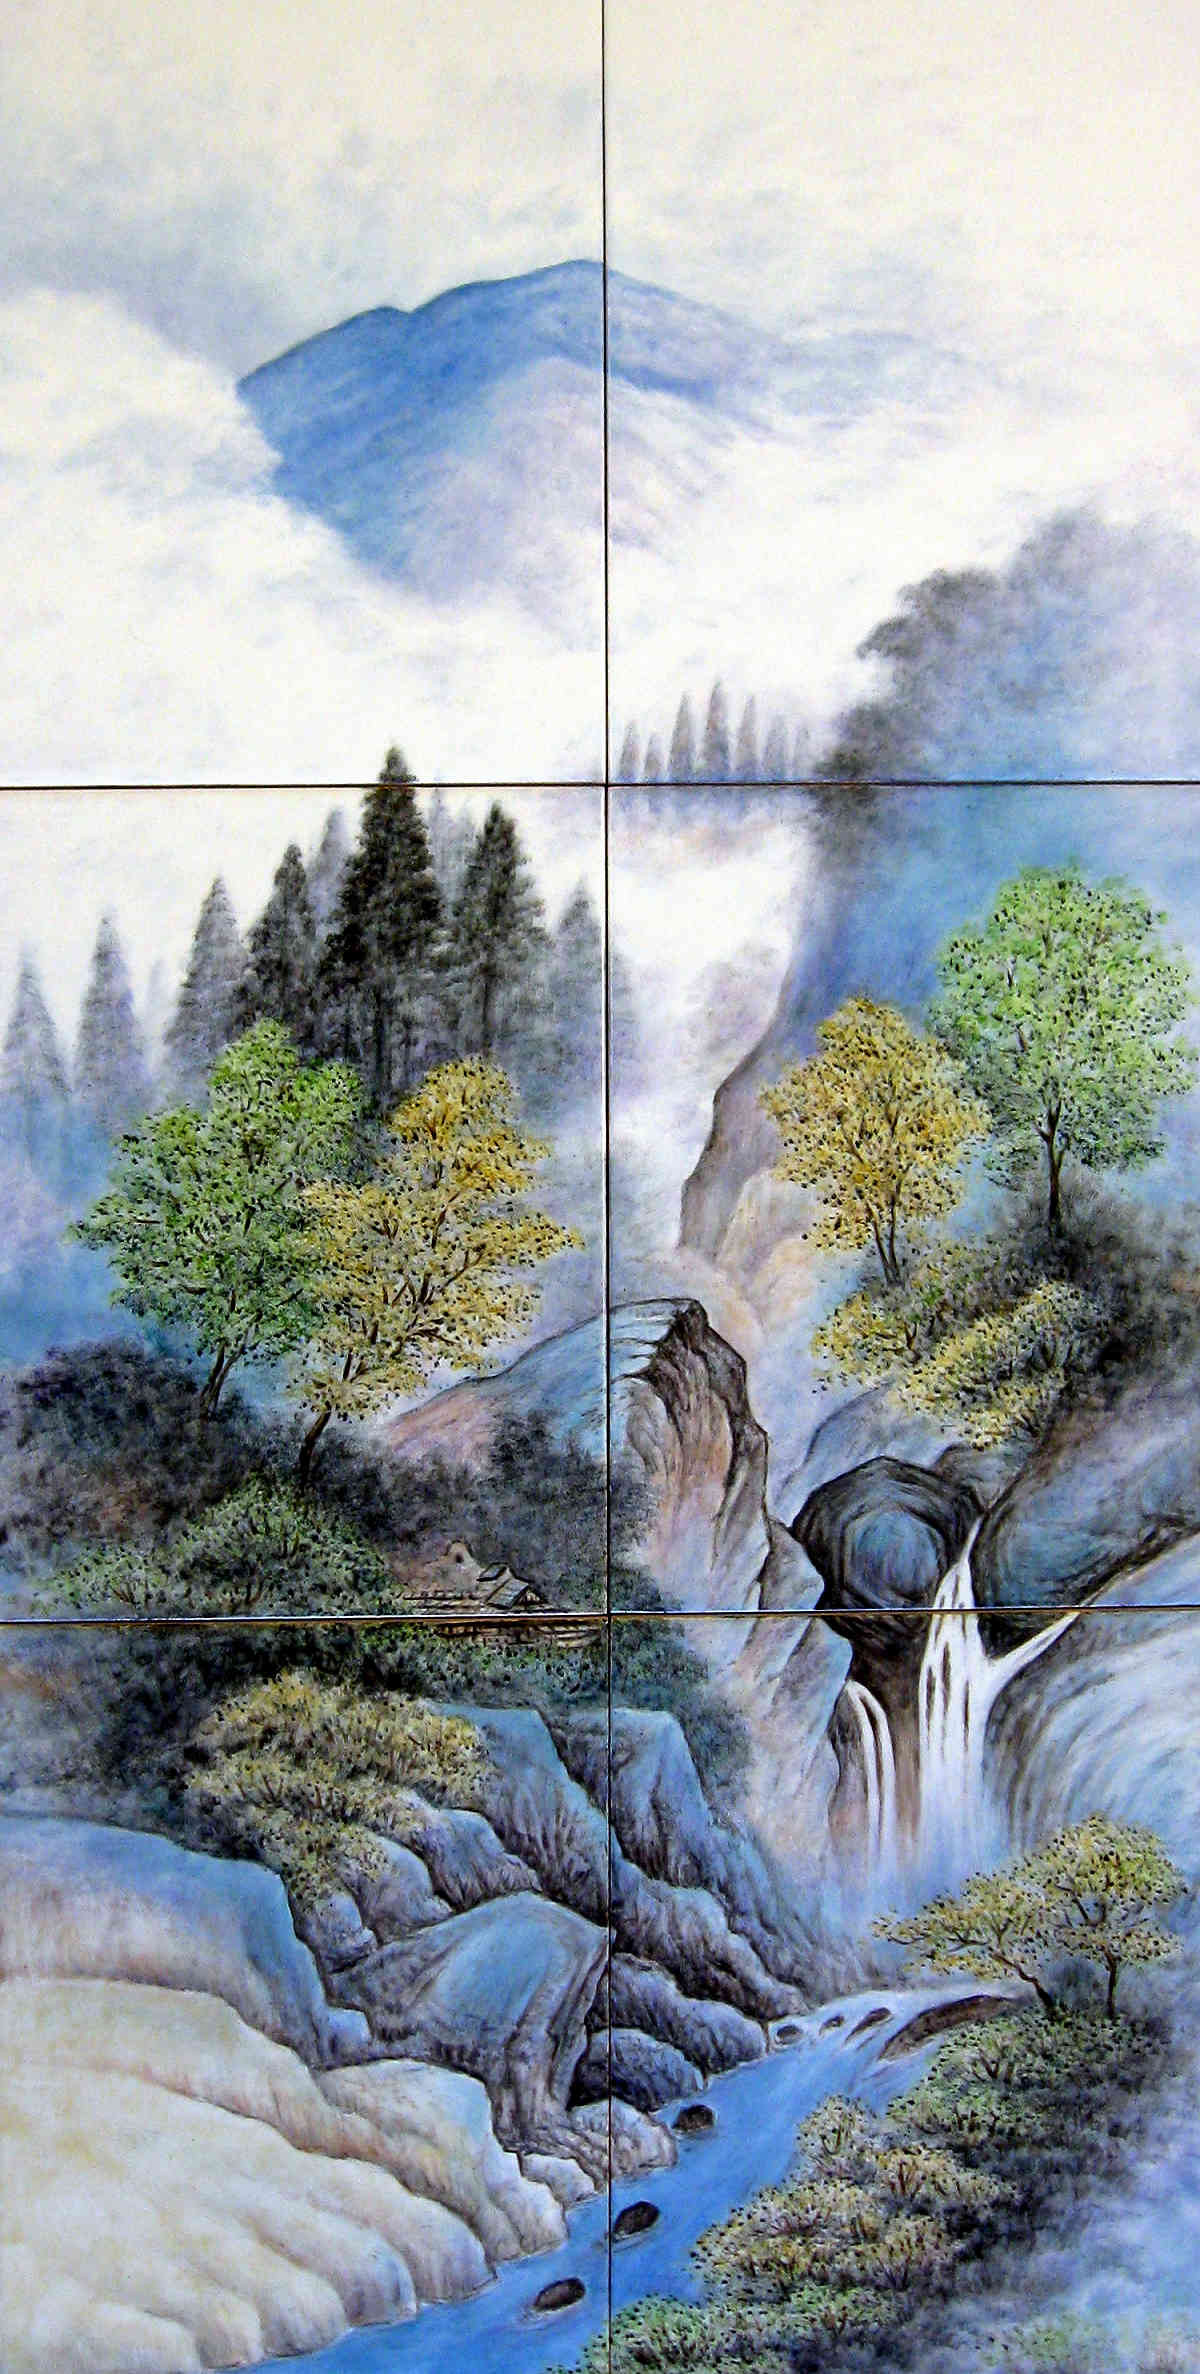 Japan Landscape Painting
 Sansui Ga Landscape Painting Japanese bath decor tile mural